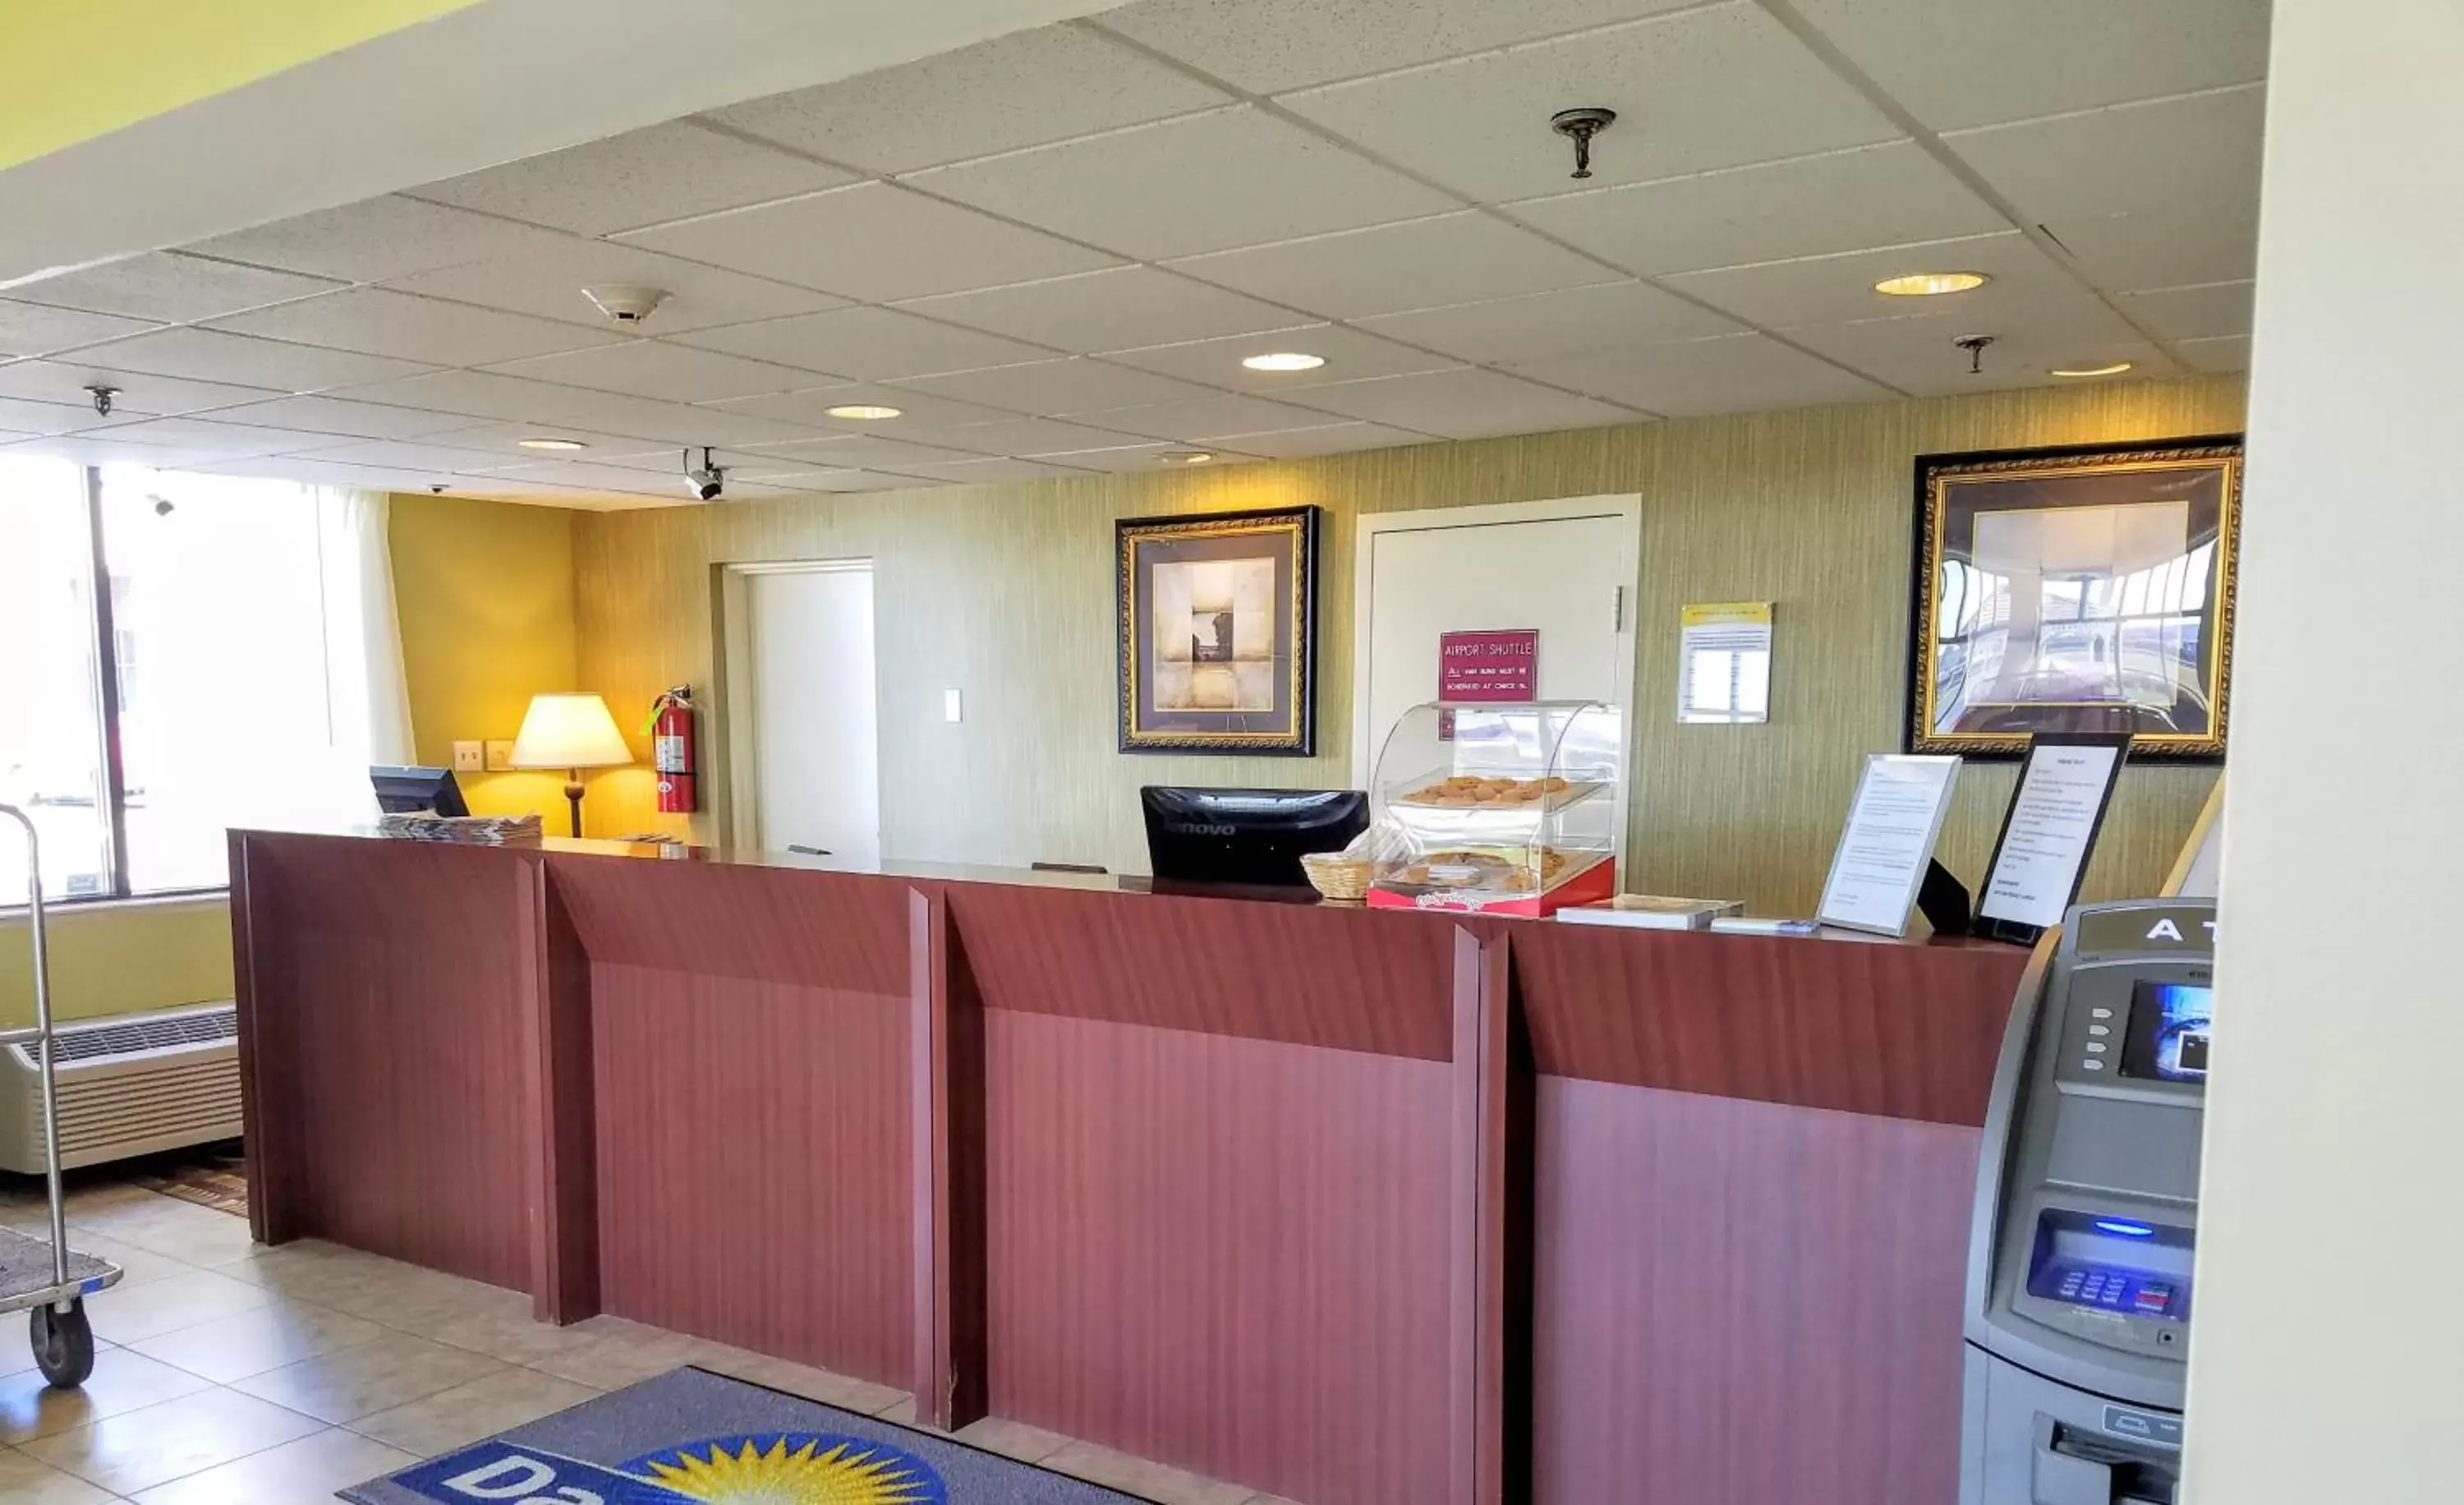 Lobby or reception, Lobby/Reception in Days Inn by Wyndham Windsor Locks / Bradley Intl Airport